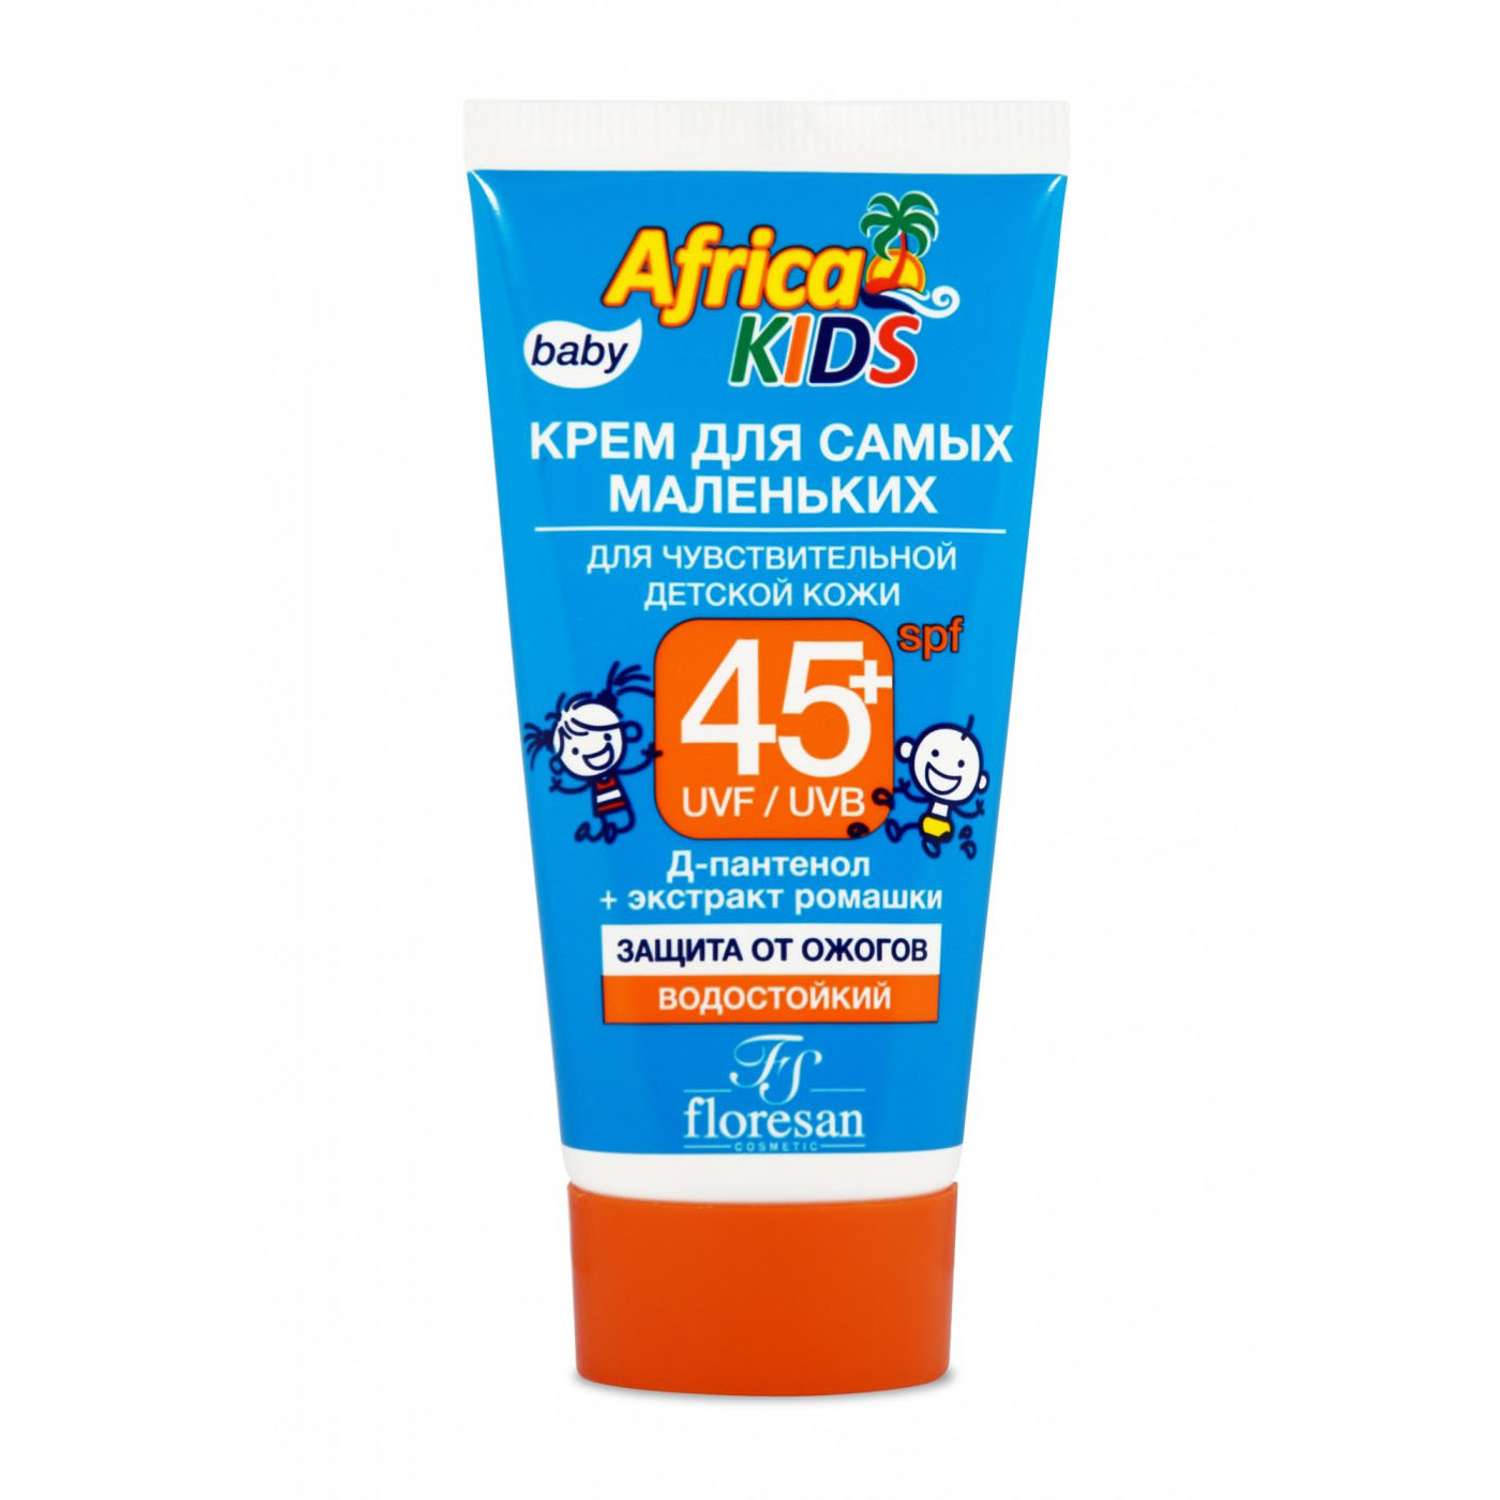 Крем для самых маленьких floresan Africa Kids для чувствительной детской кожи SPF45+ 50мл - фото 1